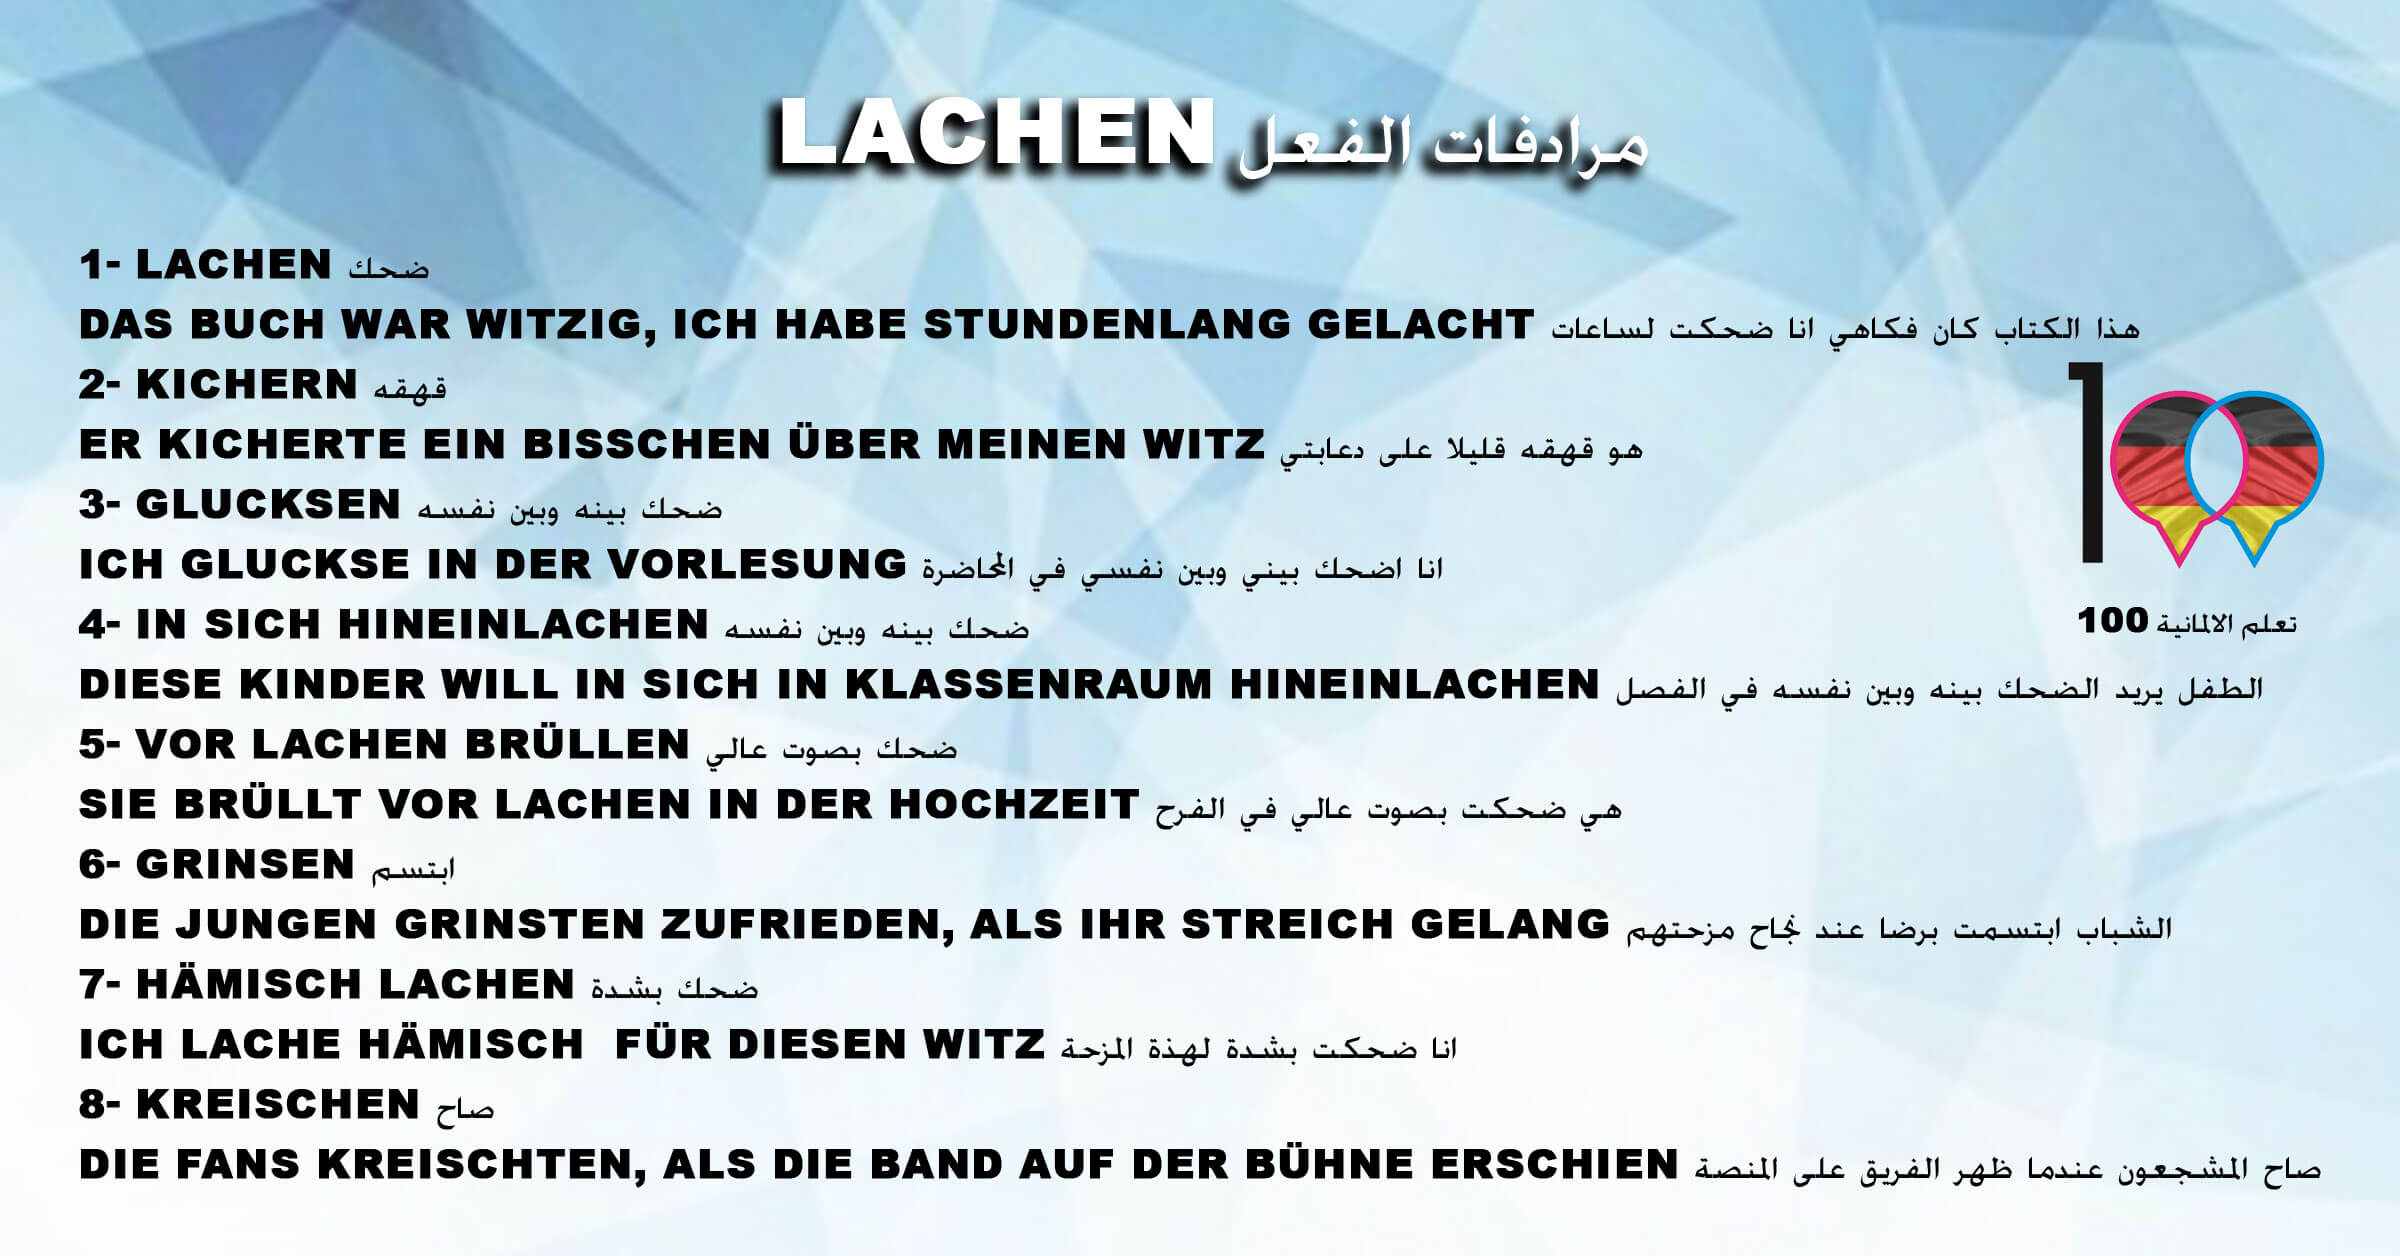 مرادفات الفعل Lachen - تعلم اللغة الالمانية lachen 1 تعلم اللغة الالمانية